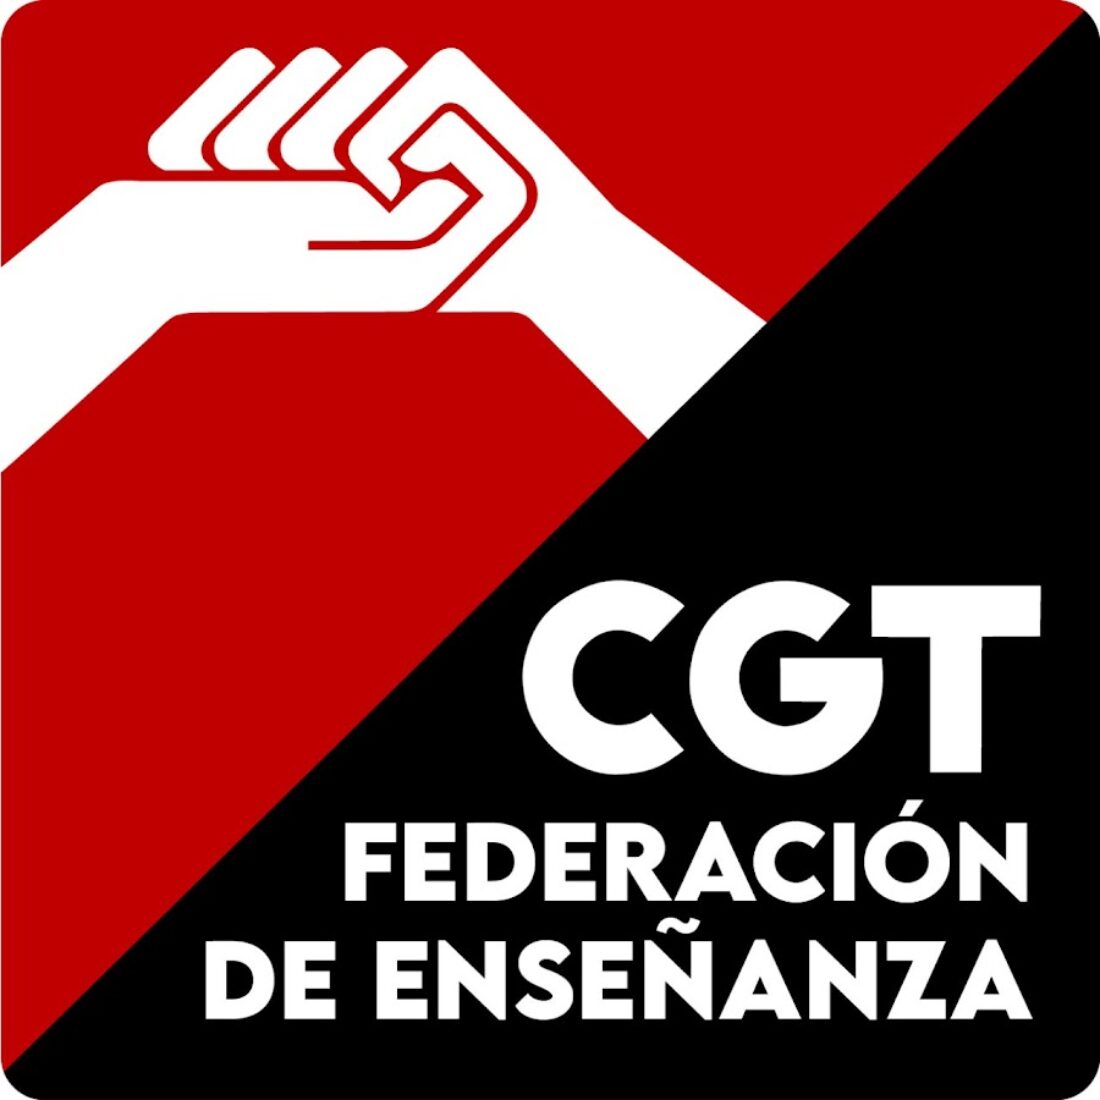 CGT denuncia que miles de docentes en abuso de temporalidad serán despedidos en España tras los procesos selectivos